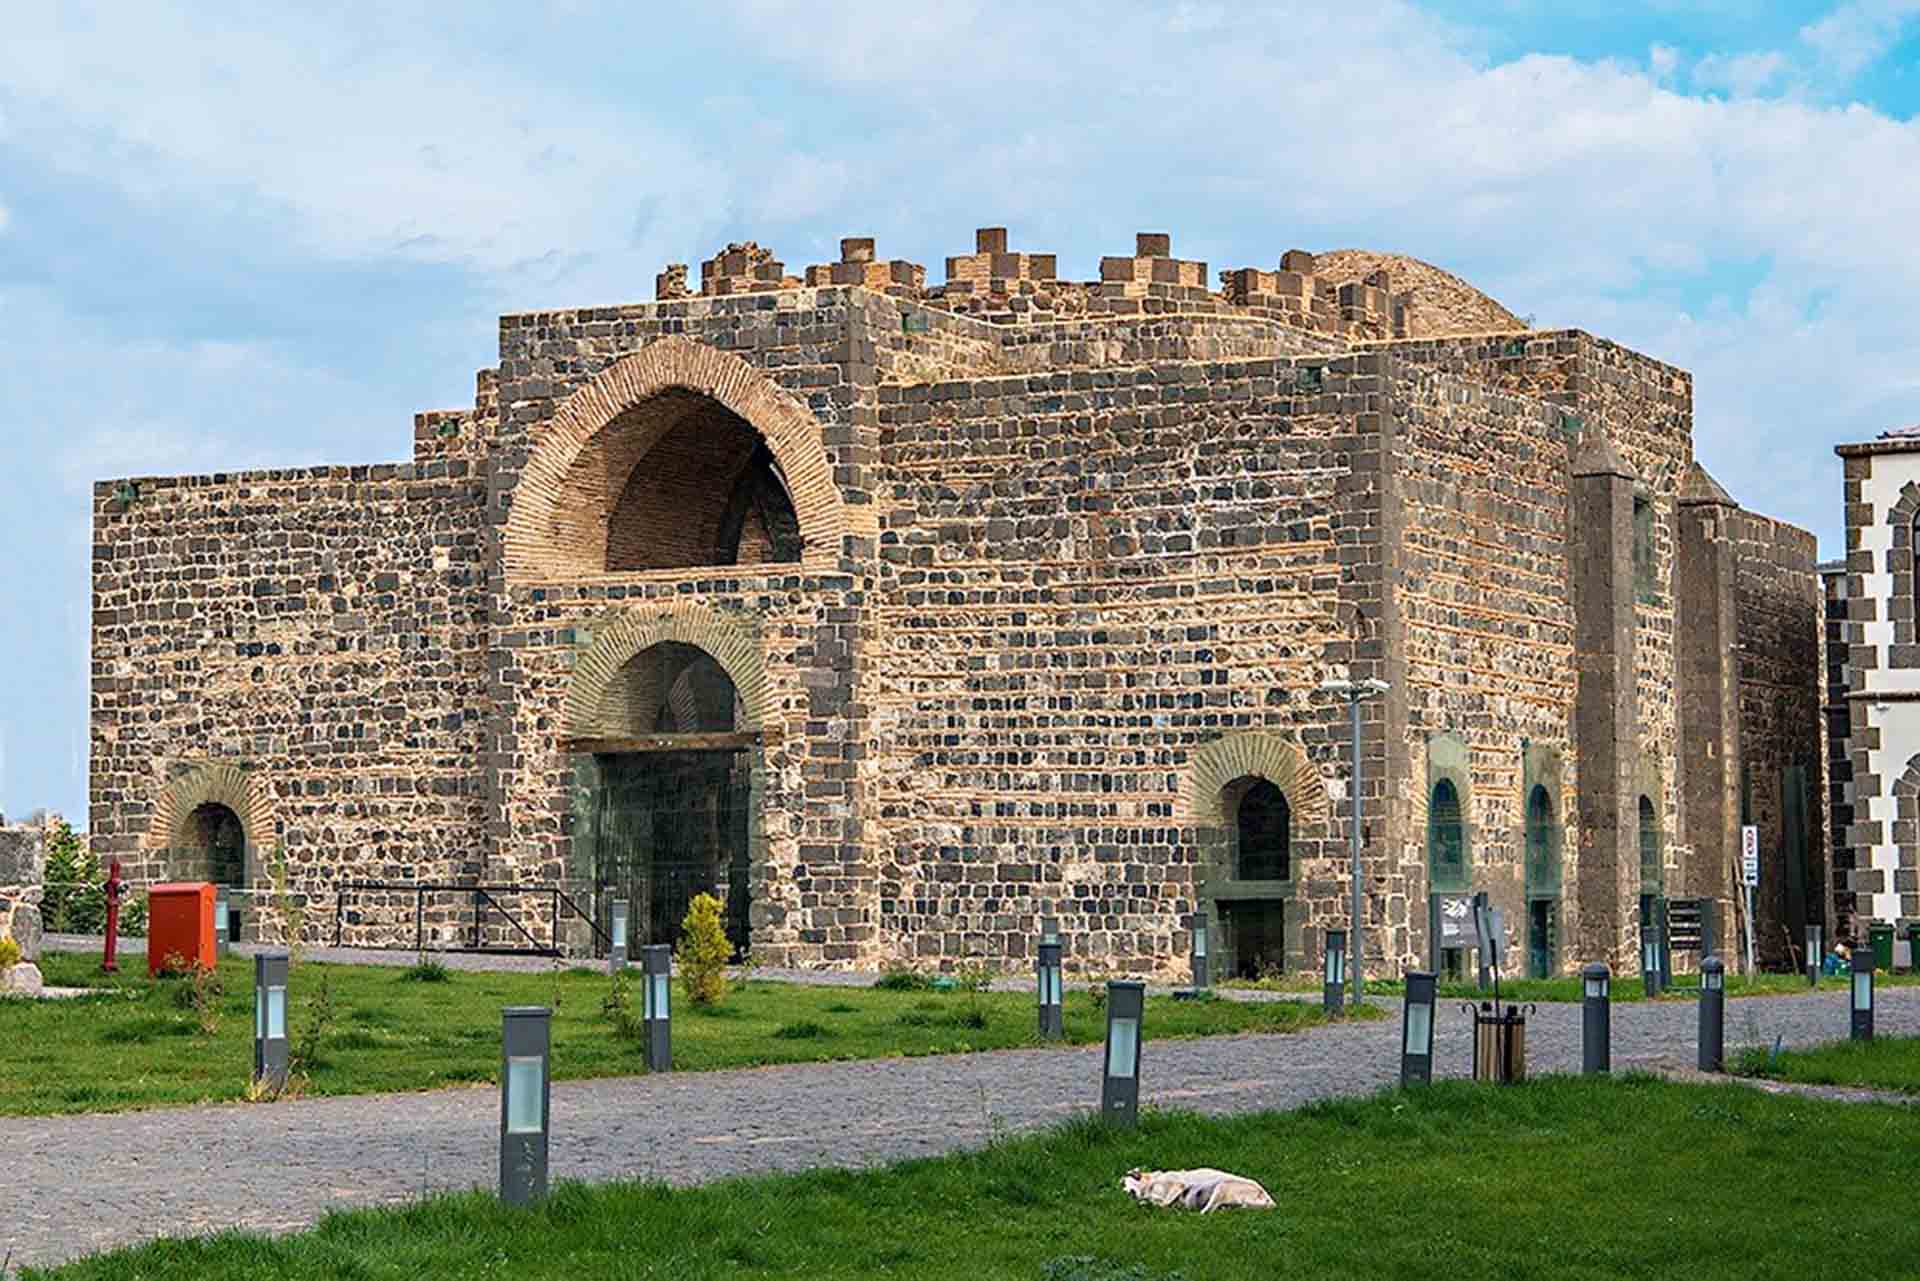 Chiêm ngưỡng vẻ kỳ vĩ của Diyarbakir - Tường thành dài thứ 2 thế giới bị ảnh hưởng bởi động đất tại Thổ Nhĩ Kỳ - Ảnh 8.